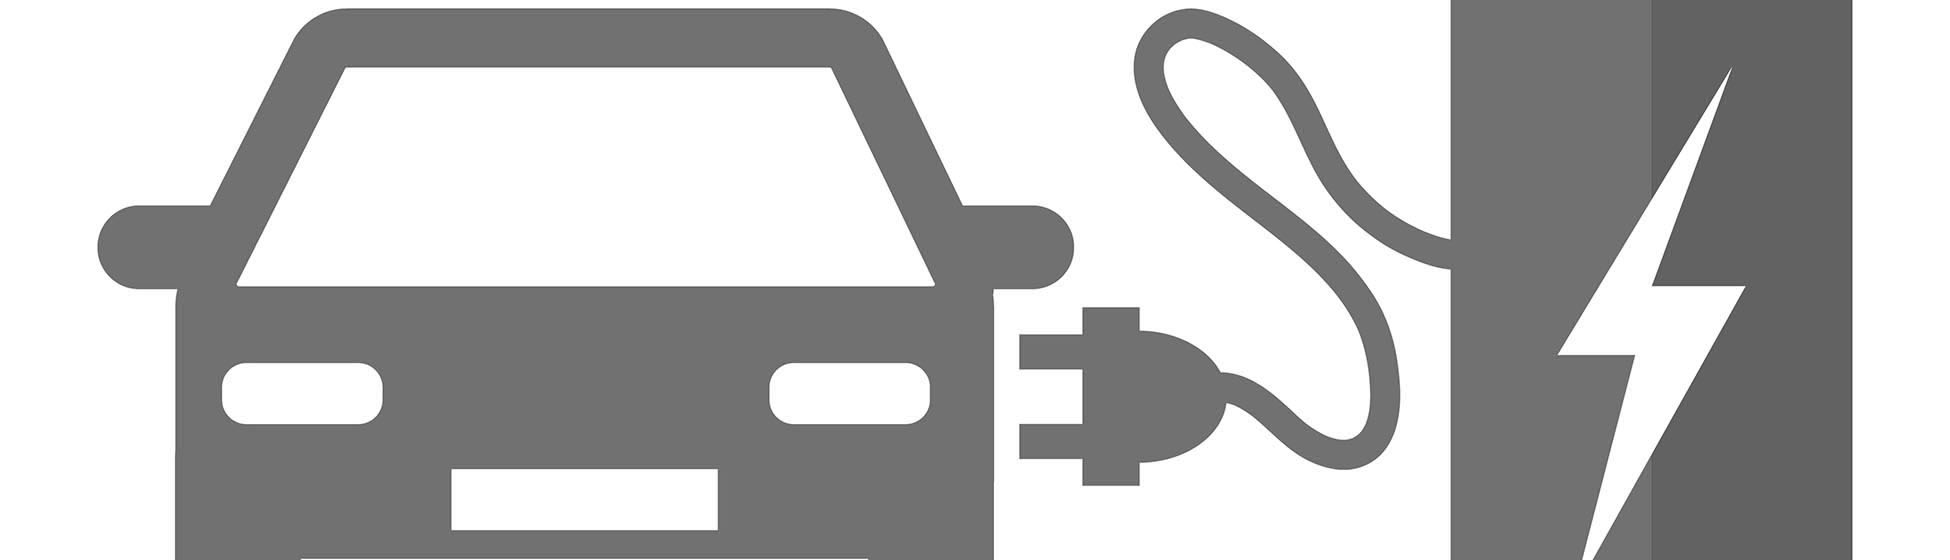 Installation chargeur voiture electrique